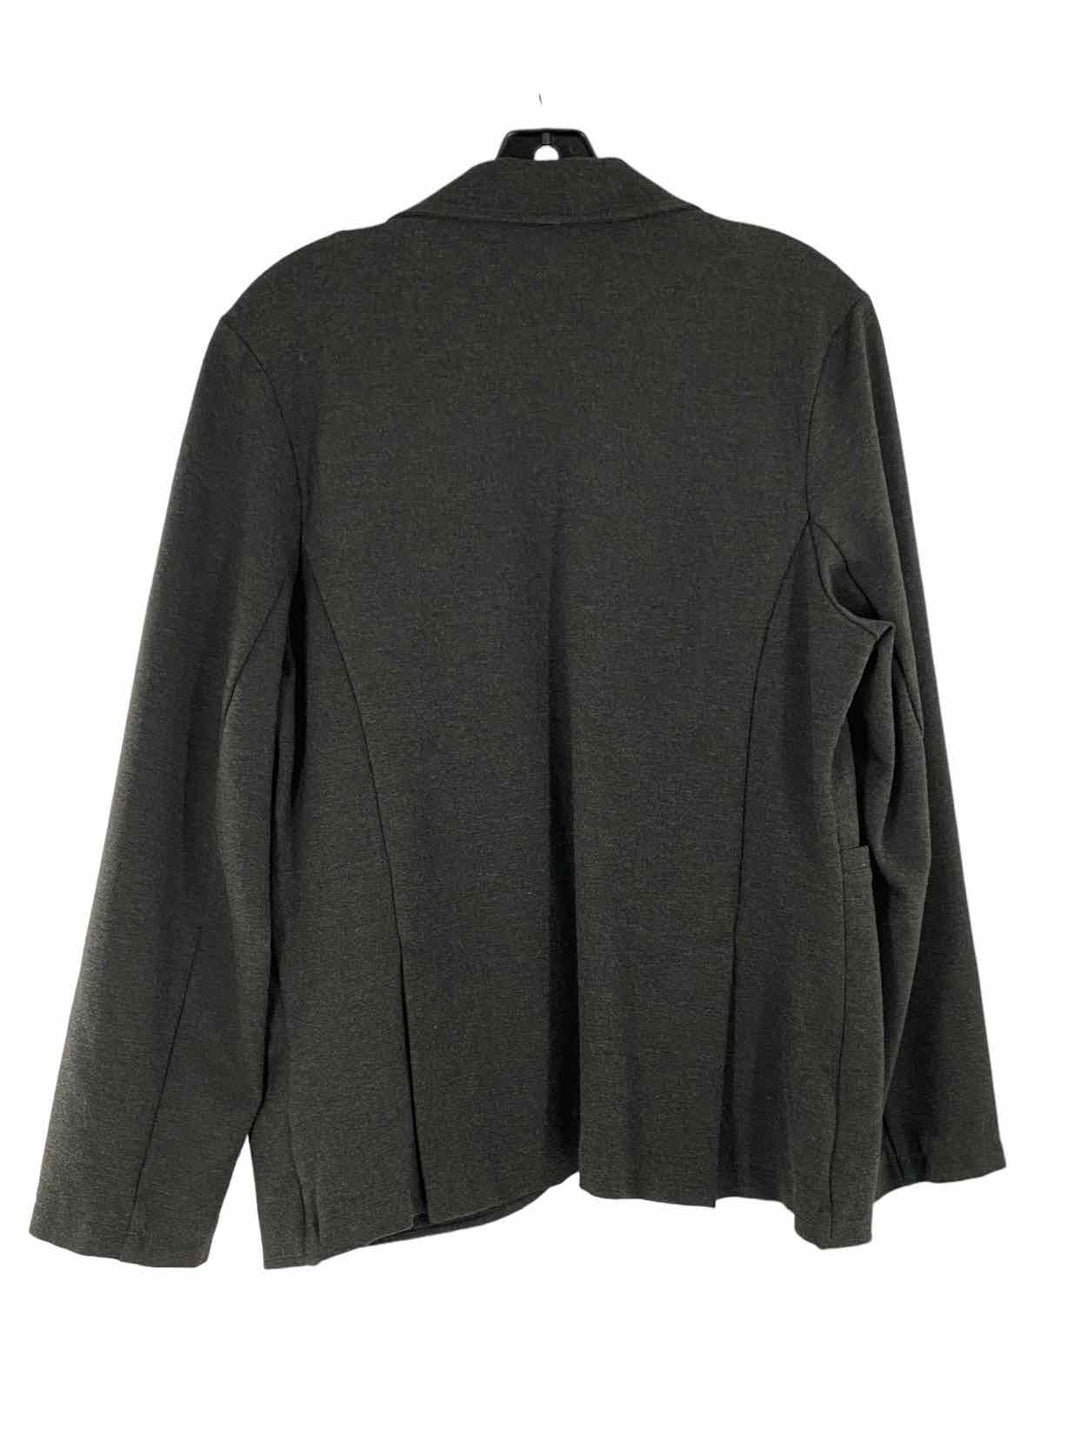 Betabrand Size XL Dark Grey Jacket